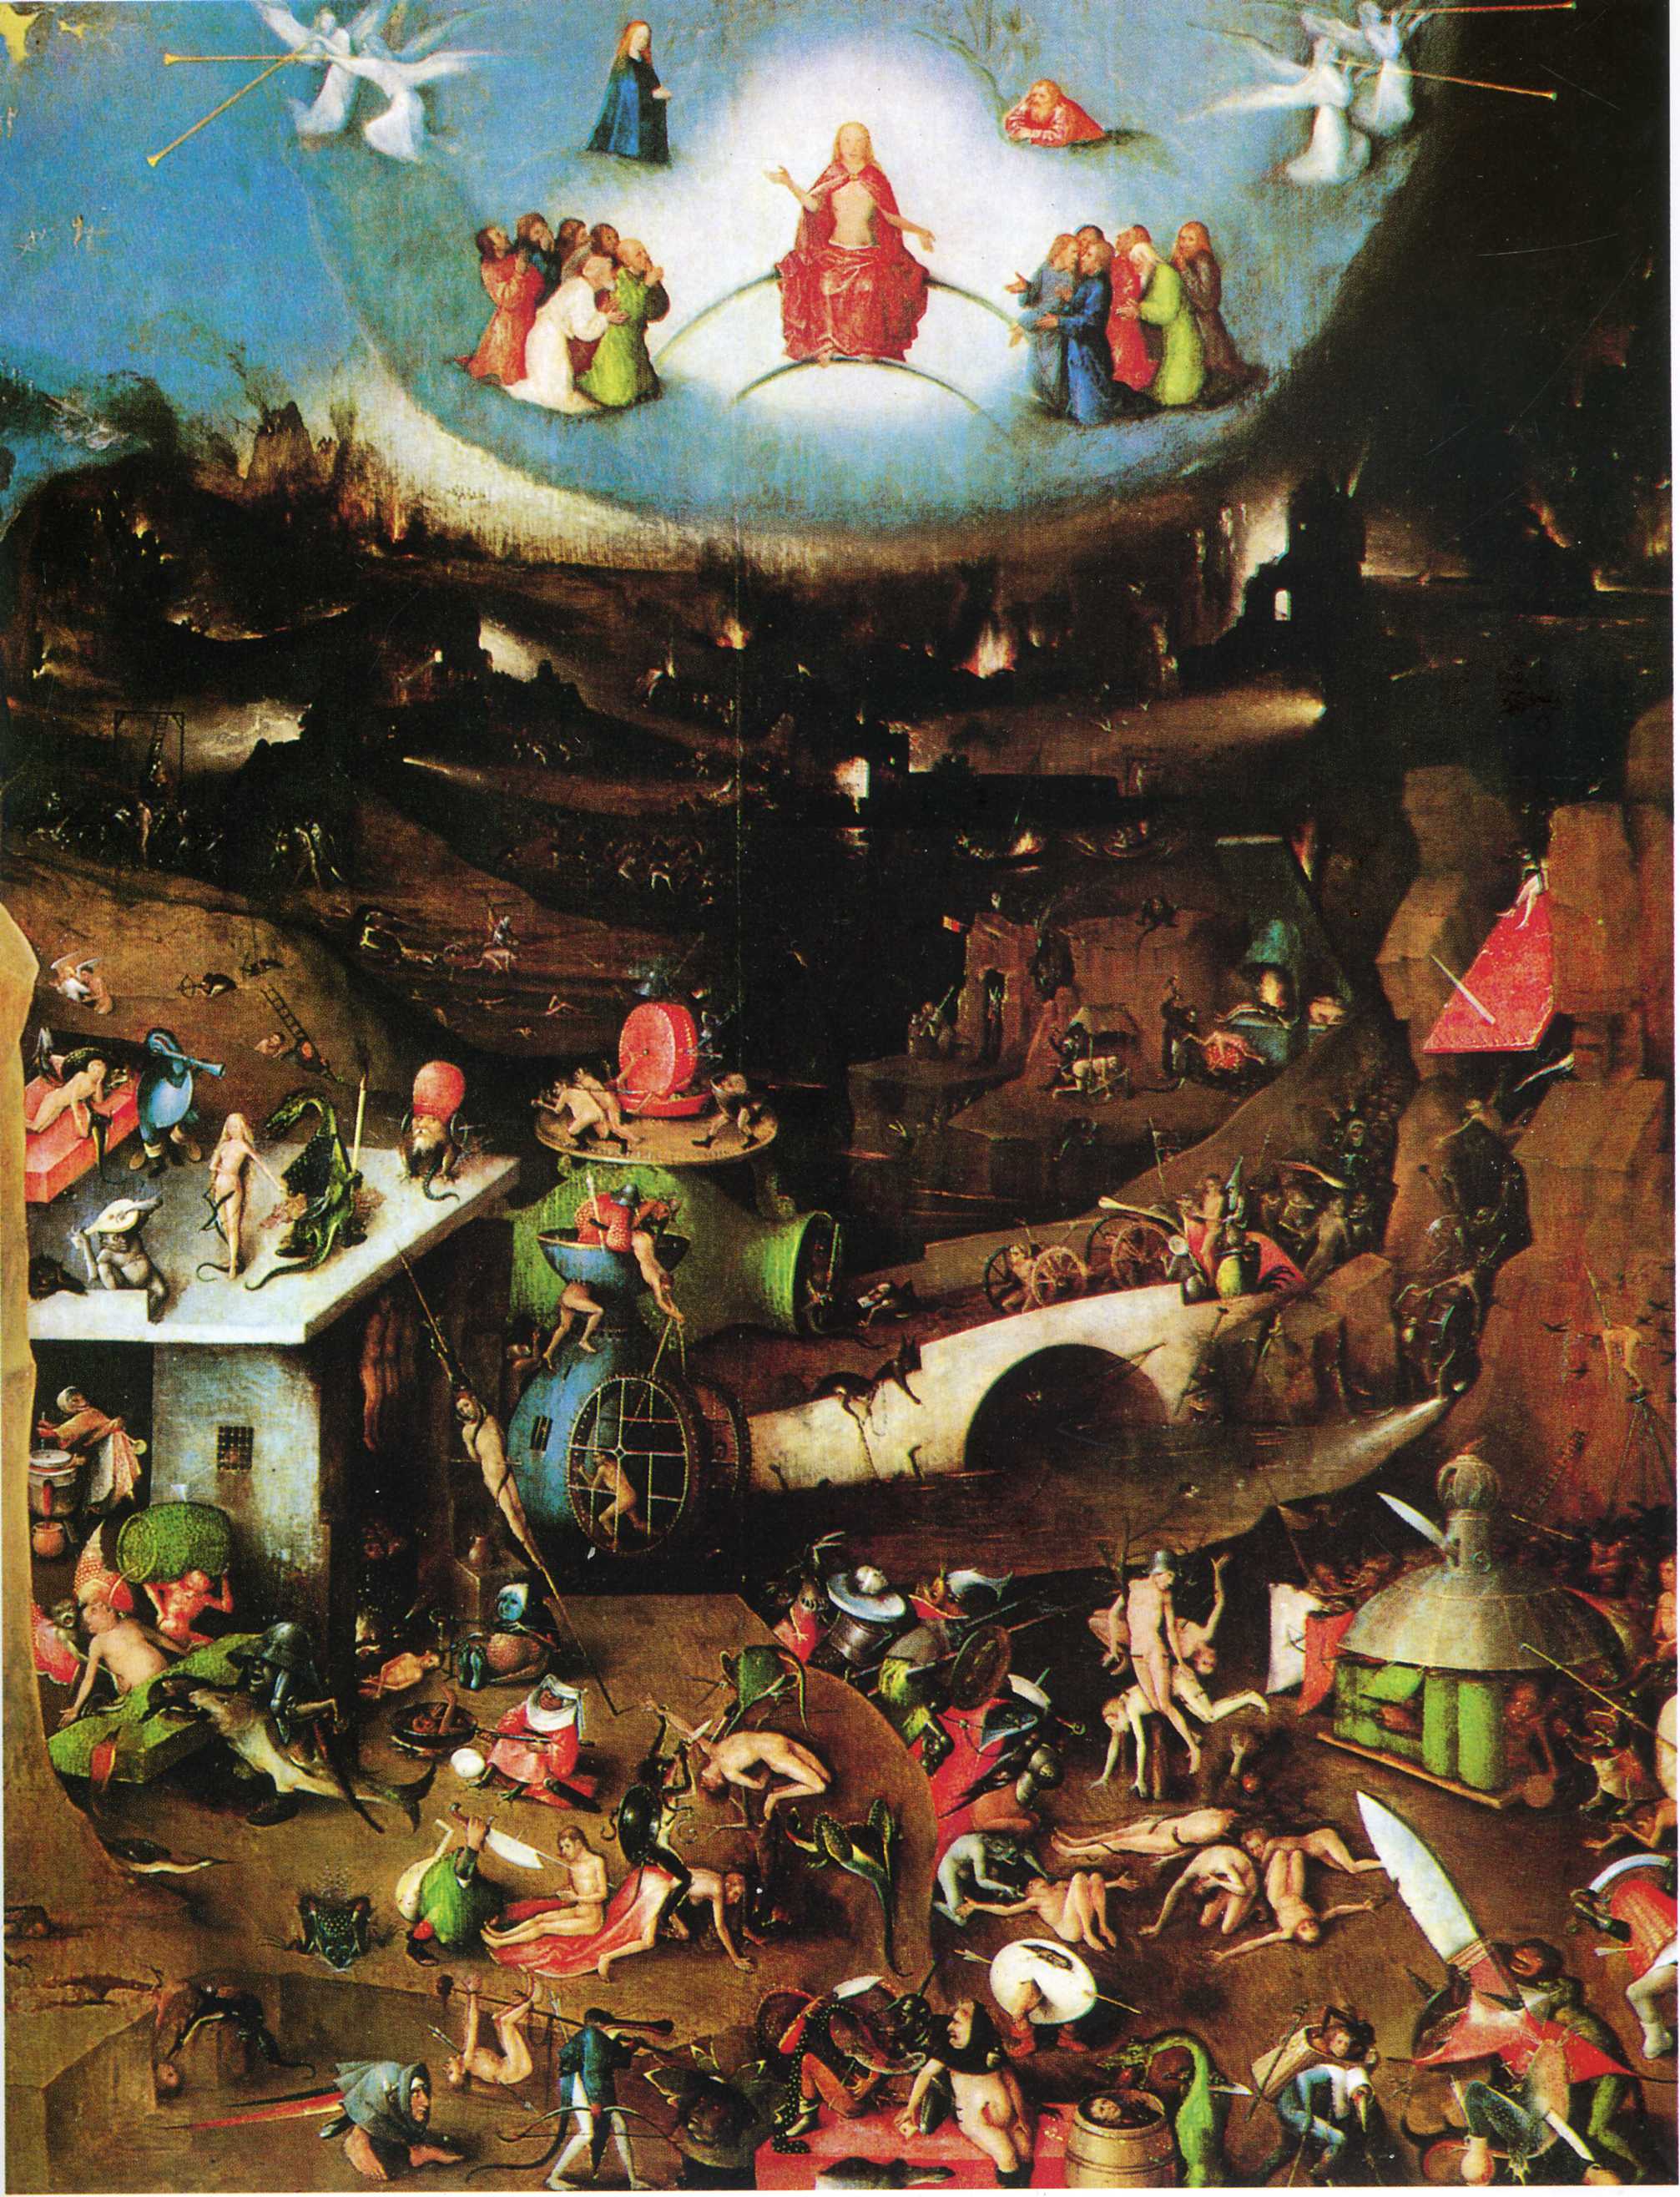 The Last Judgement (detail) (1500).